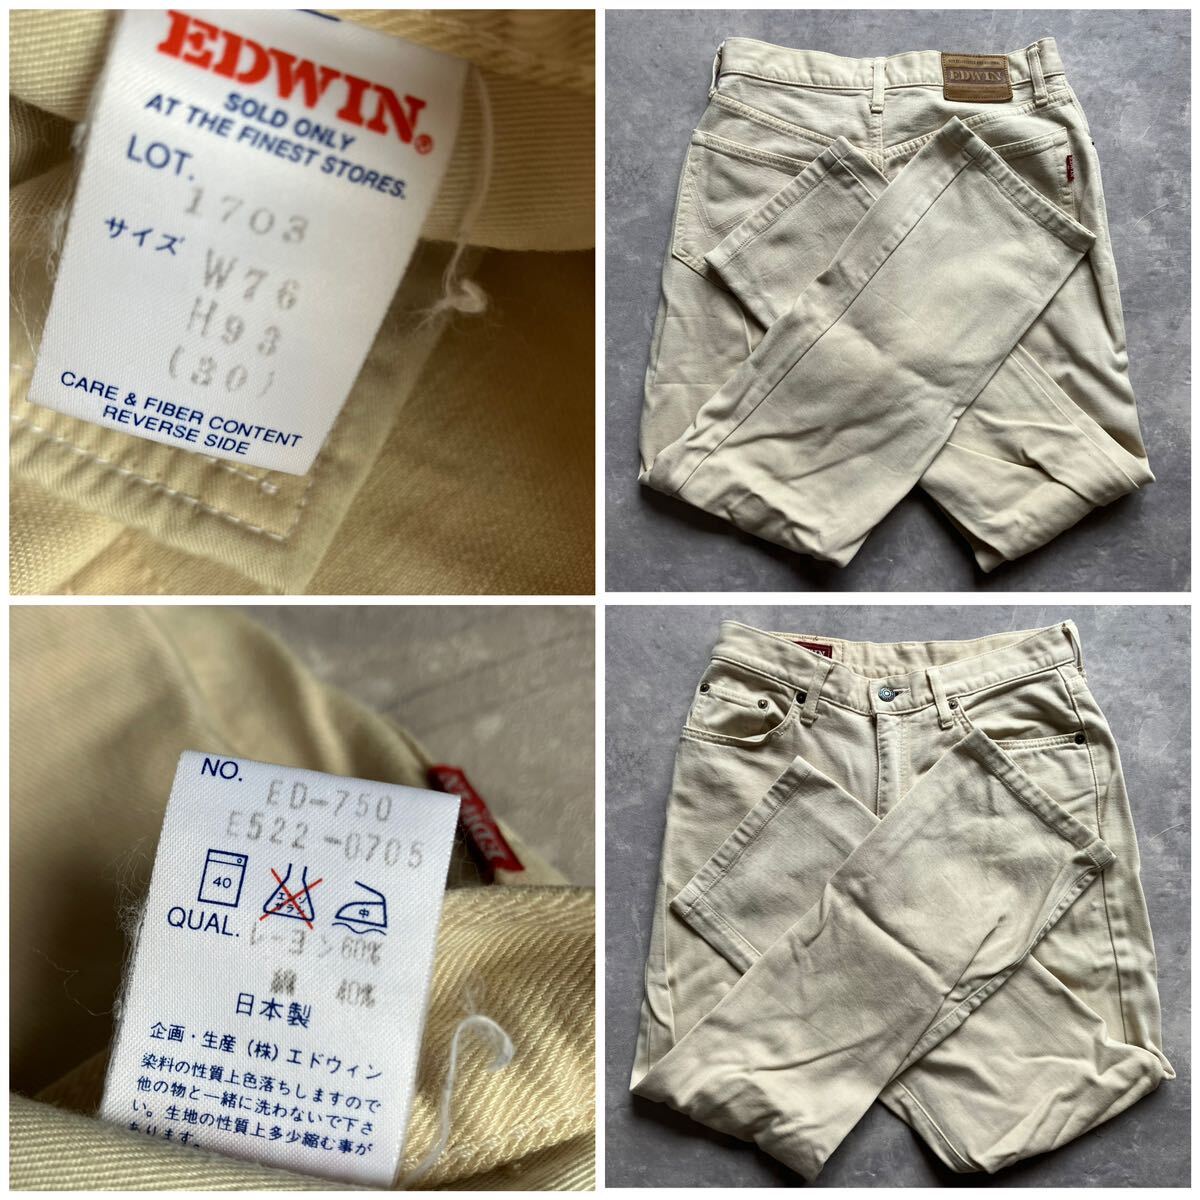 即決 W30 エドウィン EDWIN 90's オールド ソフトジーンズ Lot.1703 ベージュ系色 日本製 MADE IN JAPAN レーヨン混合デニム 廃盤_画像10